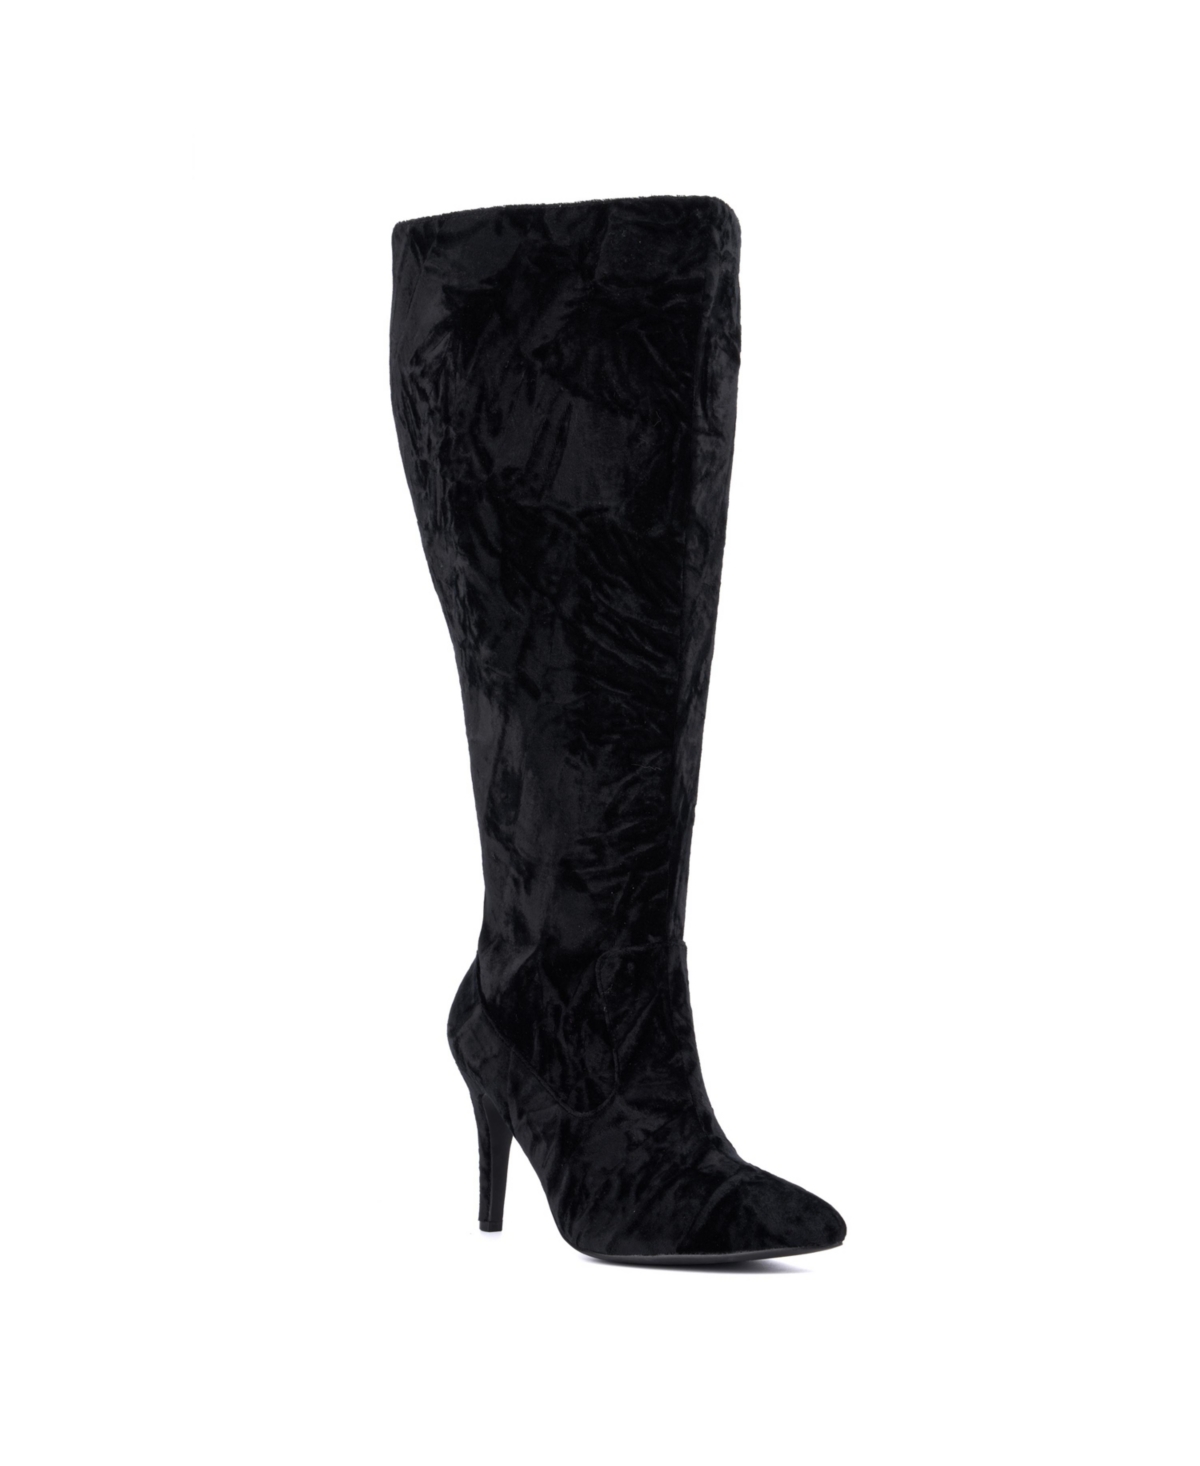 Women's Lisette Boot - Wide Width - Black velvet